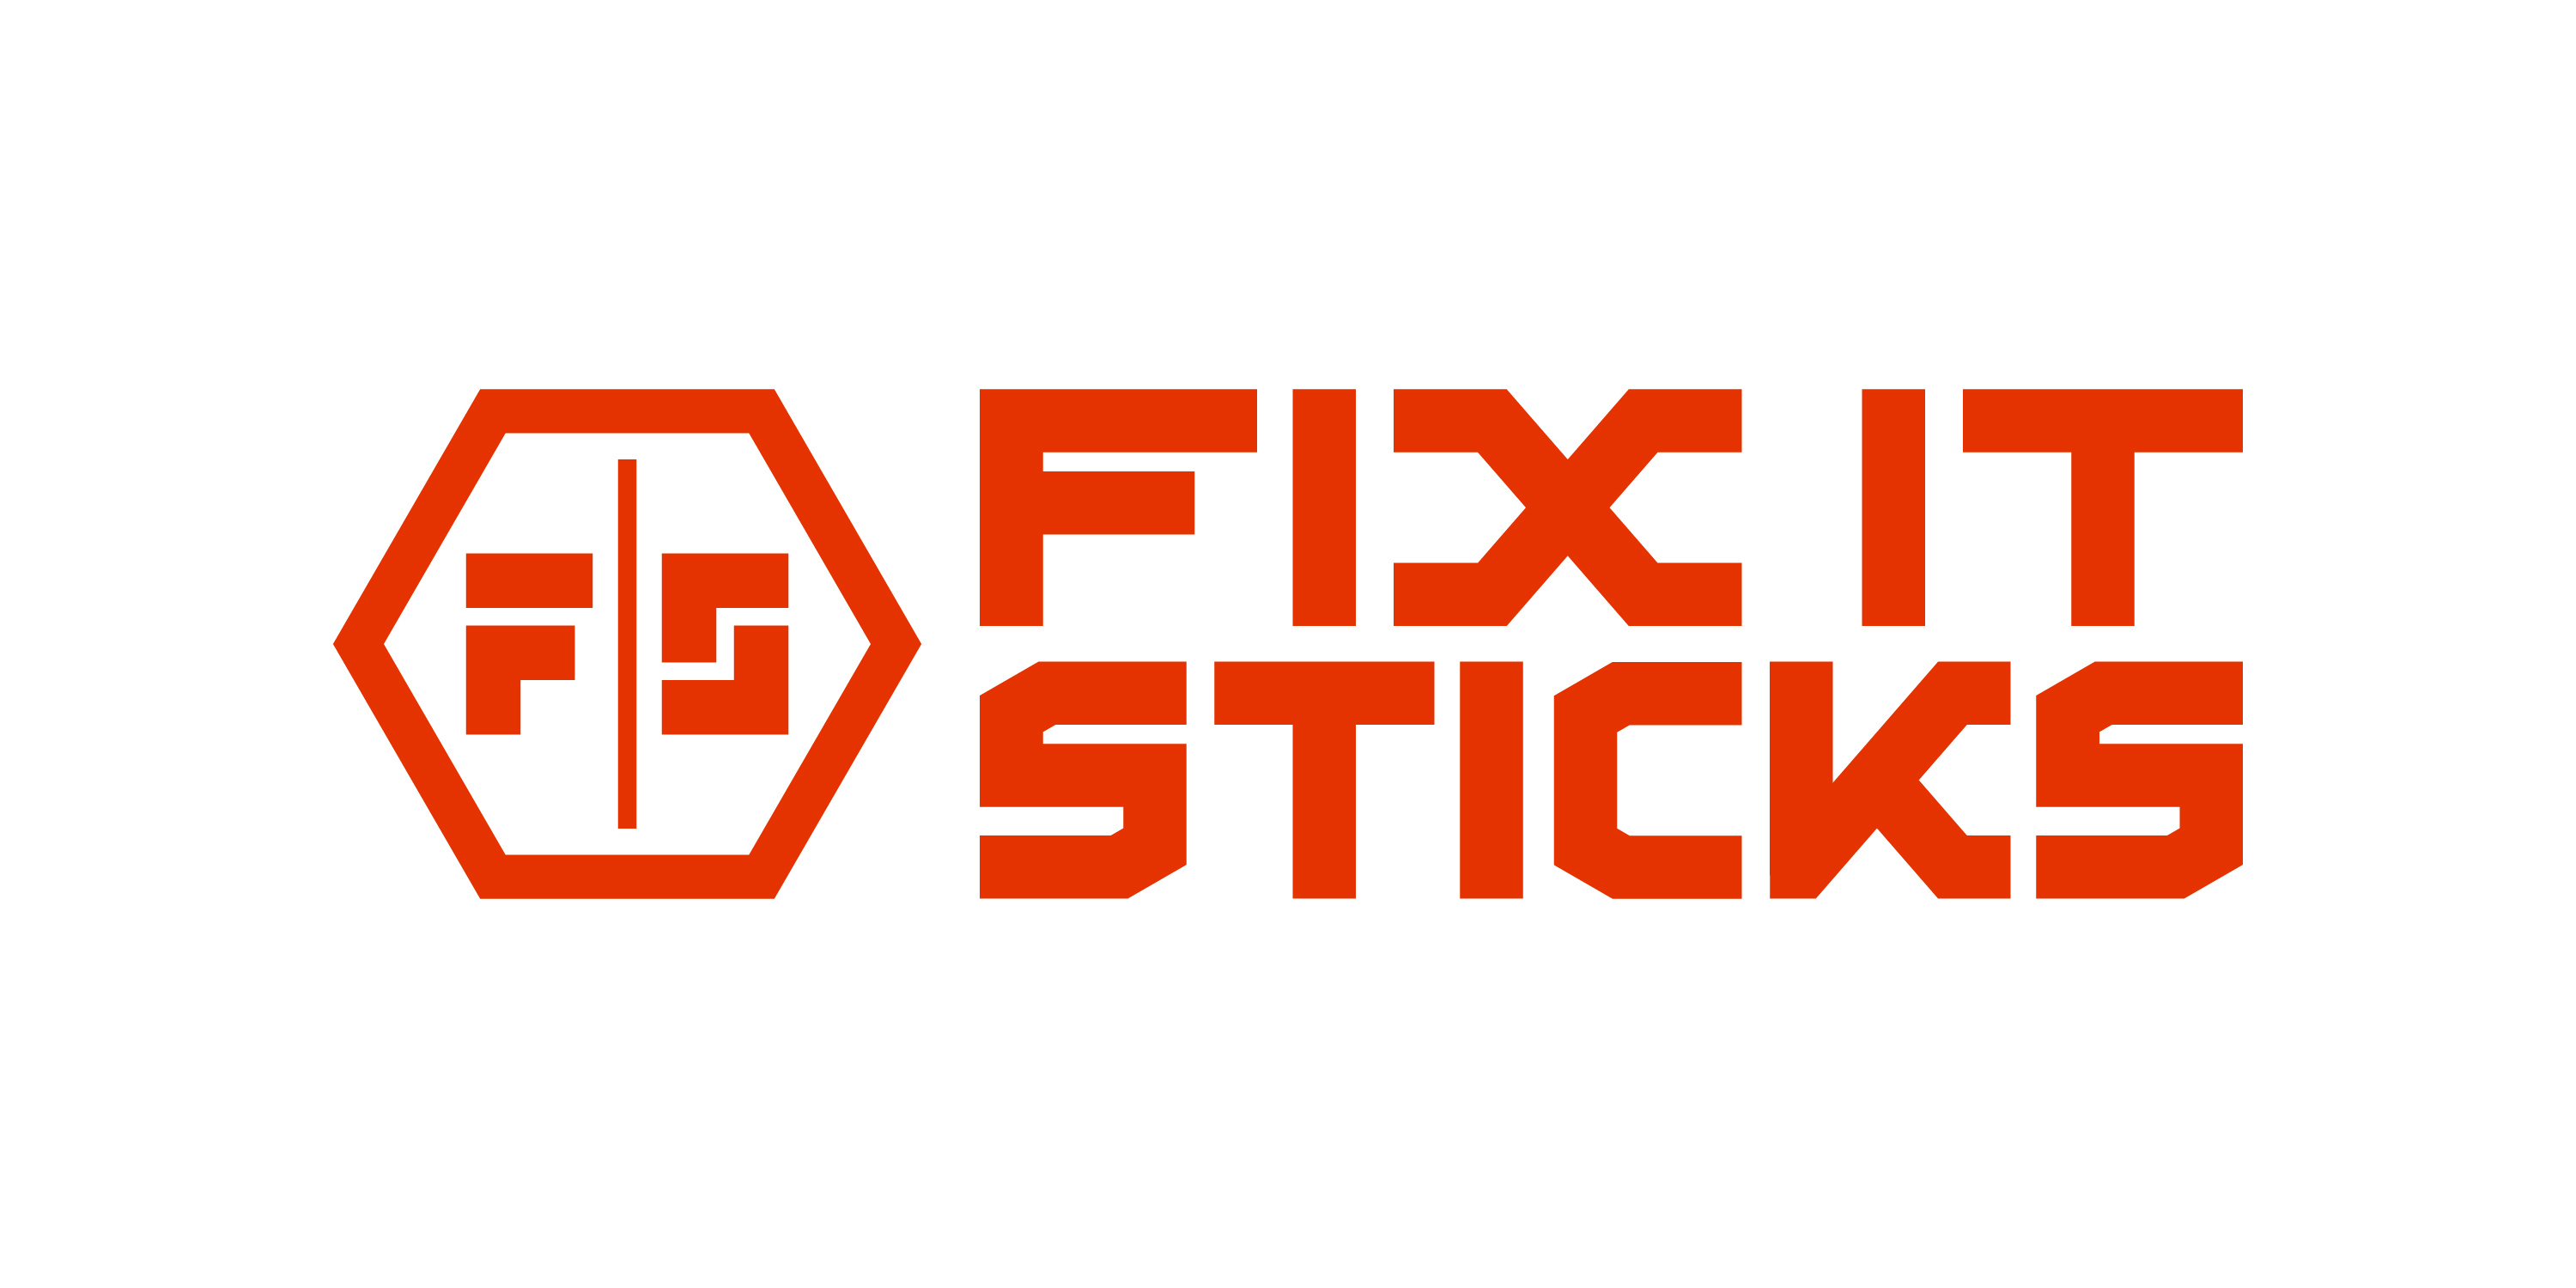 Fix It Sticks